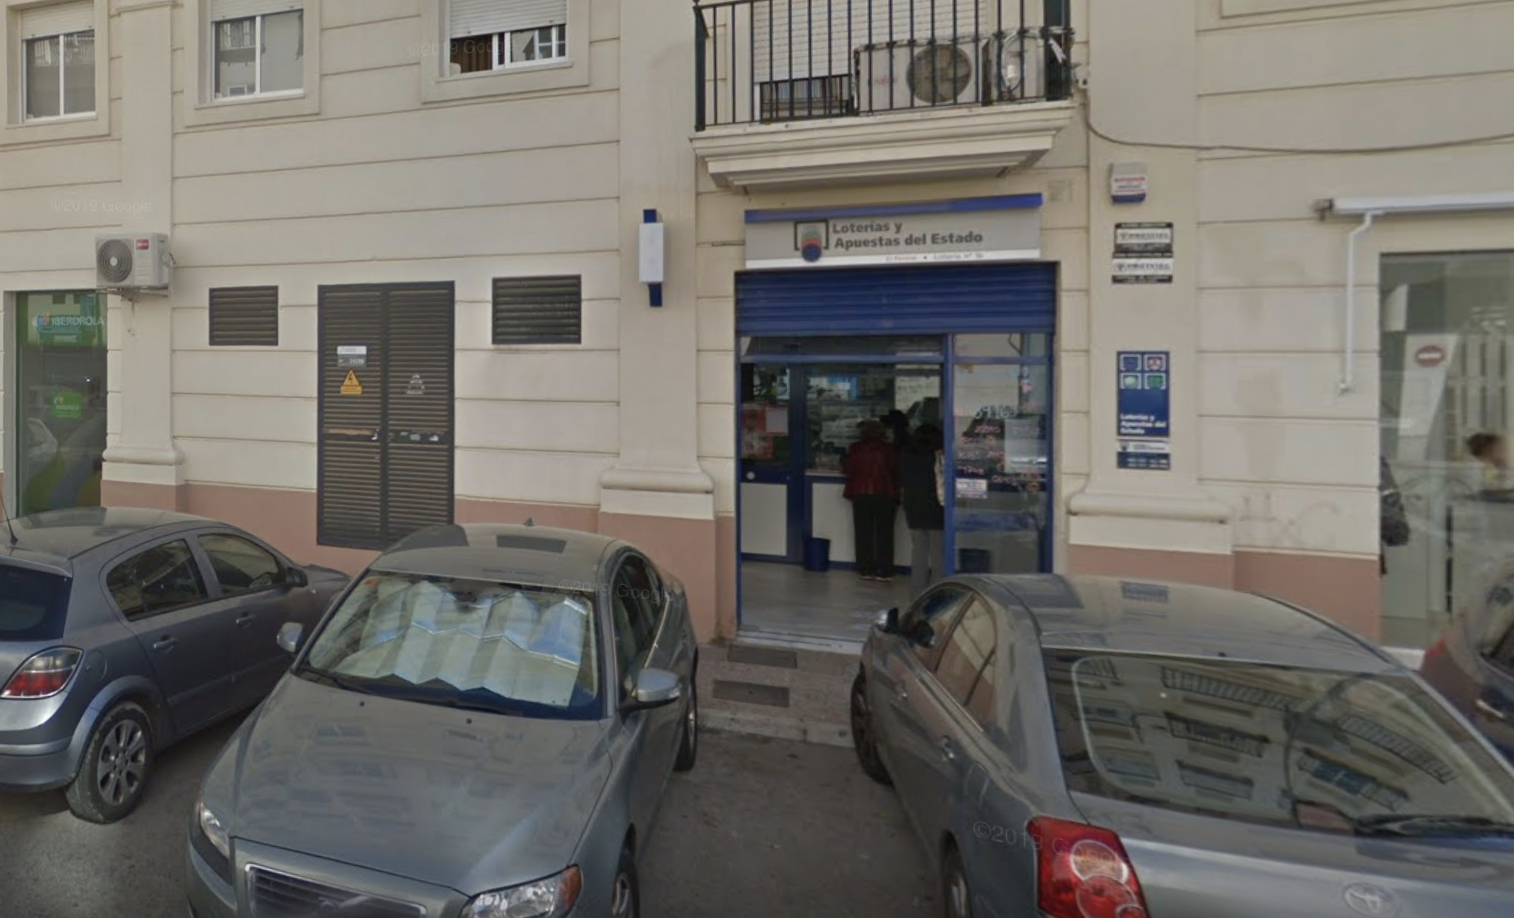 Administración donde se ha sellado el boleto ganador en Jerez. Imagen: Google Maps